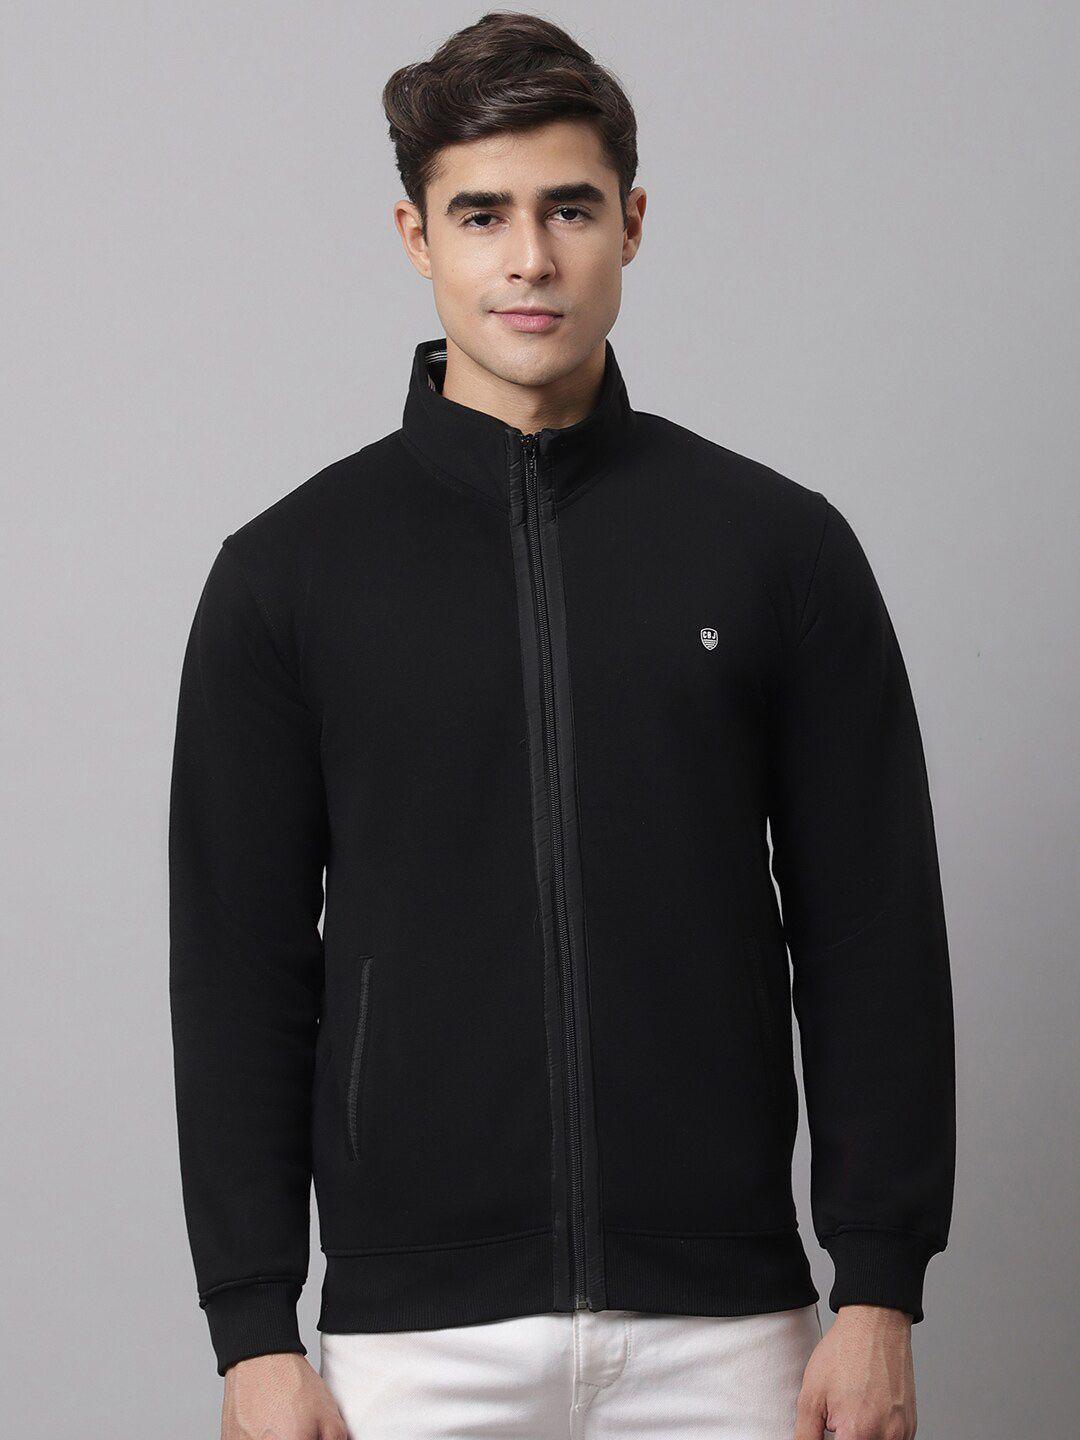 cantabil-men-black-fleece-sweatshirt